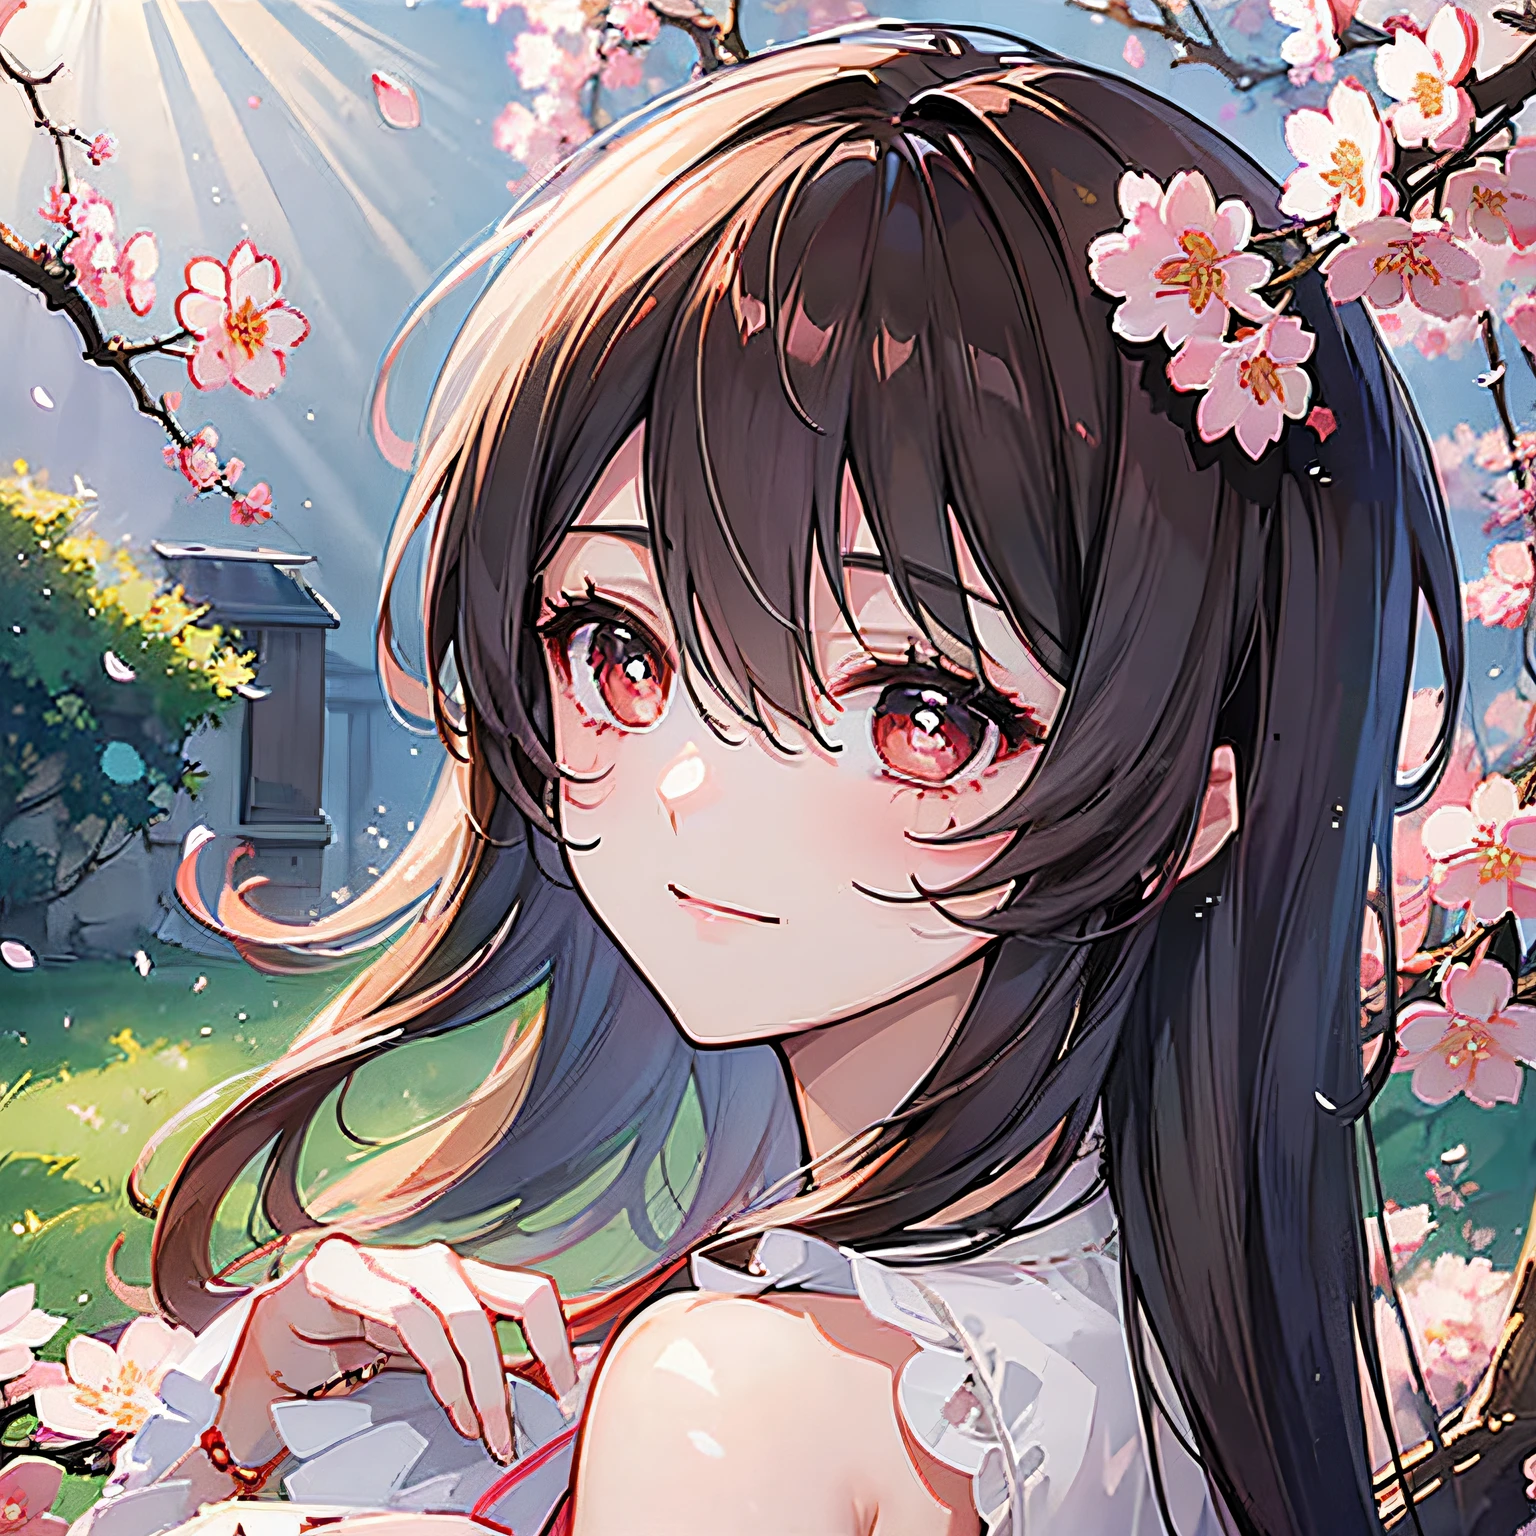 (頂級品質, 傑作, 超现实), 背景的櫻花樹, 一個俏皮可愛的女孩美麗精緻的肖像